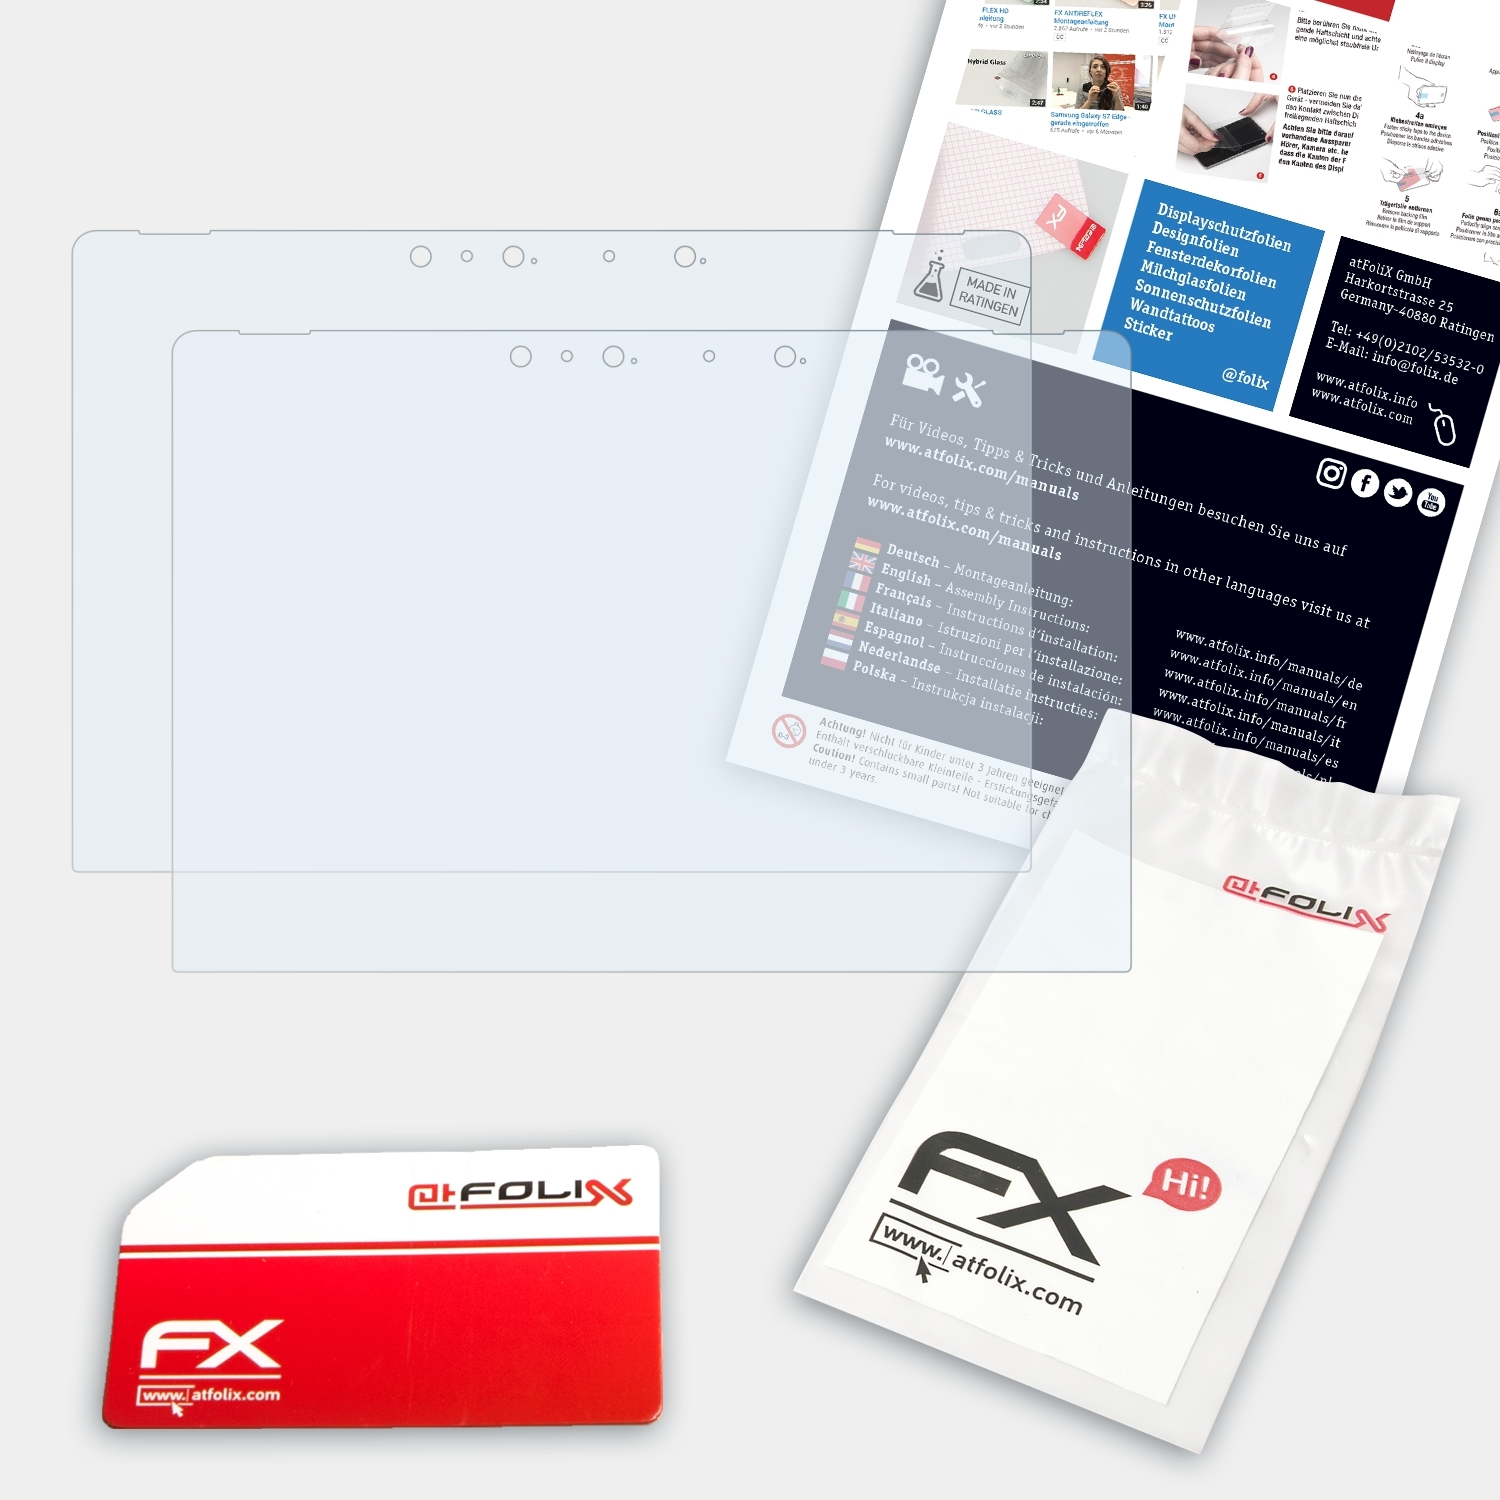 ATFOLIX 2x FX-Clear Displayschutz(für Book One) Porsche-Design